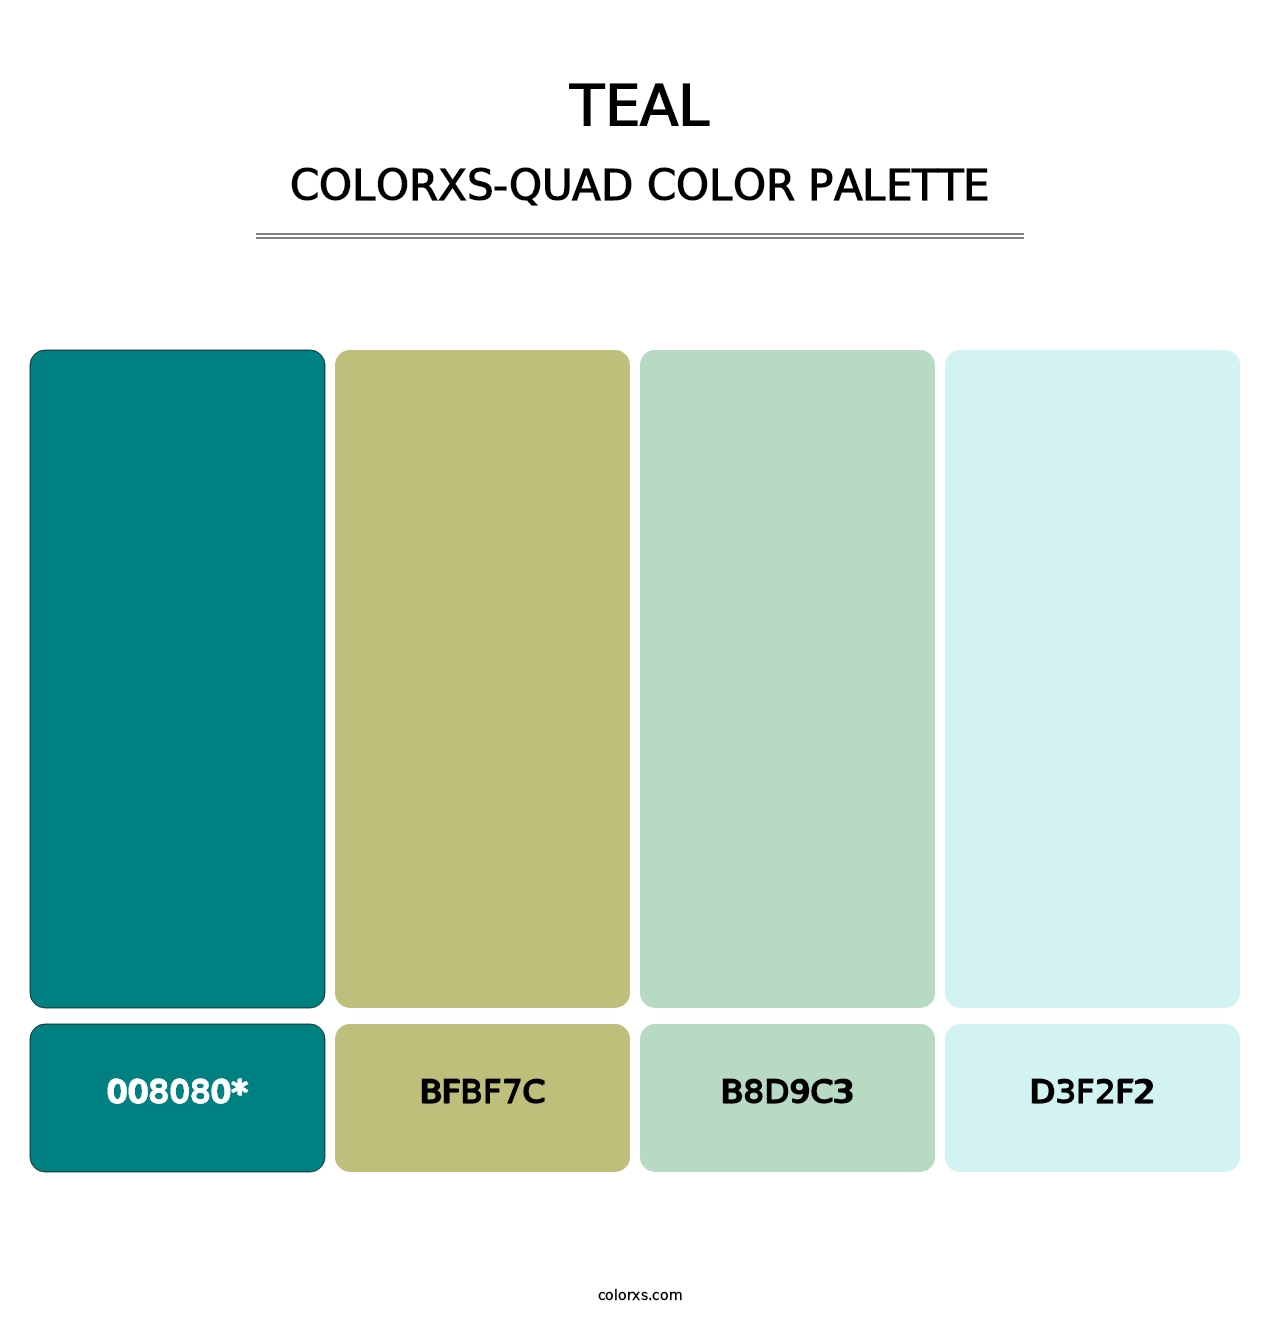 Teal - Colorxs Quad Palette